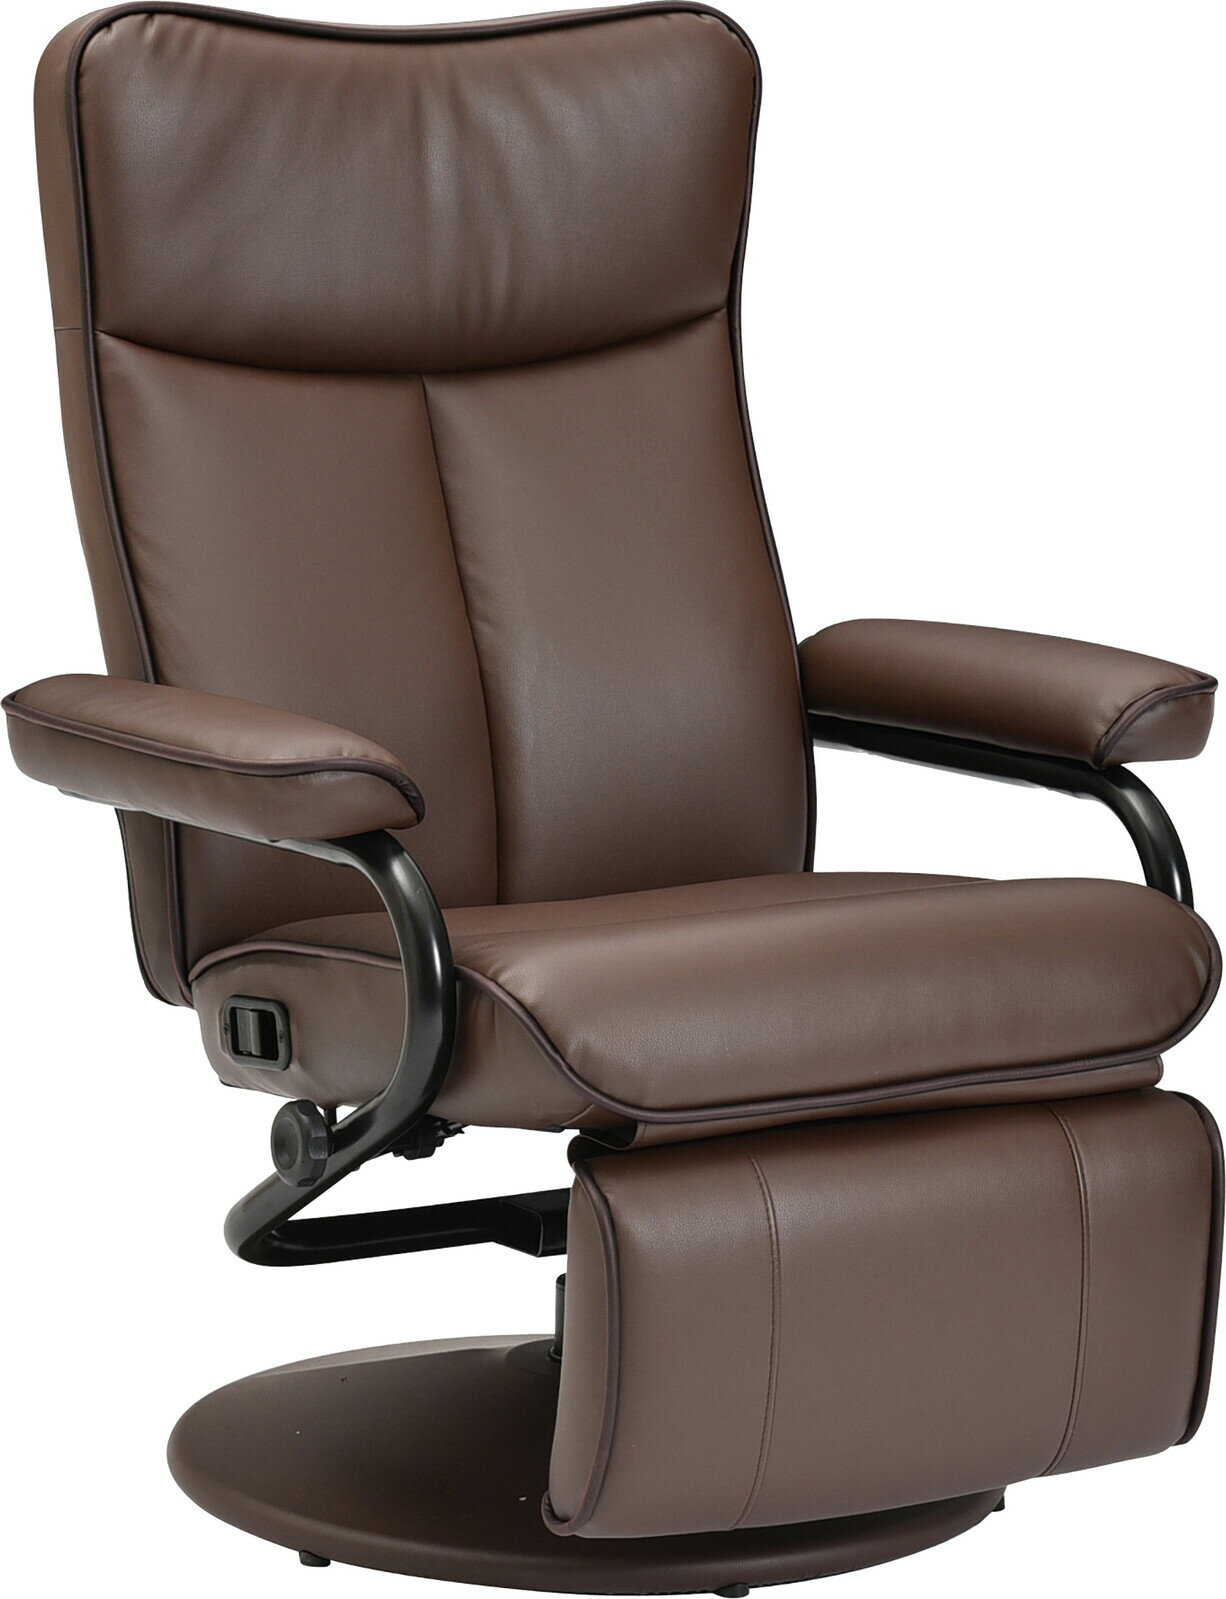 無段階リクライニング パーソナルチェア レザー 360度回転 1人掛けソファー 一人掛け オットマン一体型 高級感 リラックスチェア 一人用 パソコンチェア イス チェア 椅子 肘掛け付き おしゃれ…